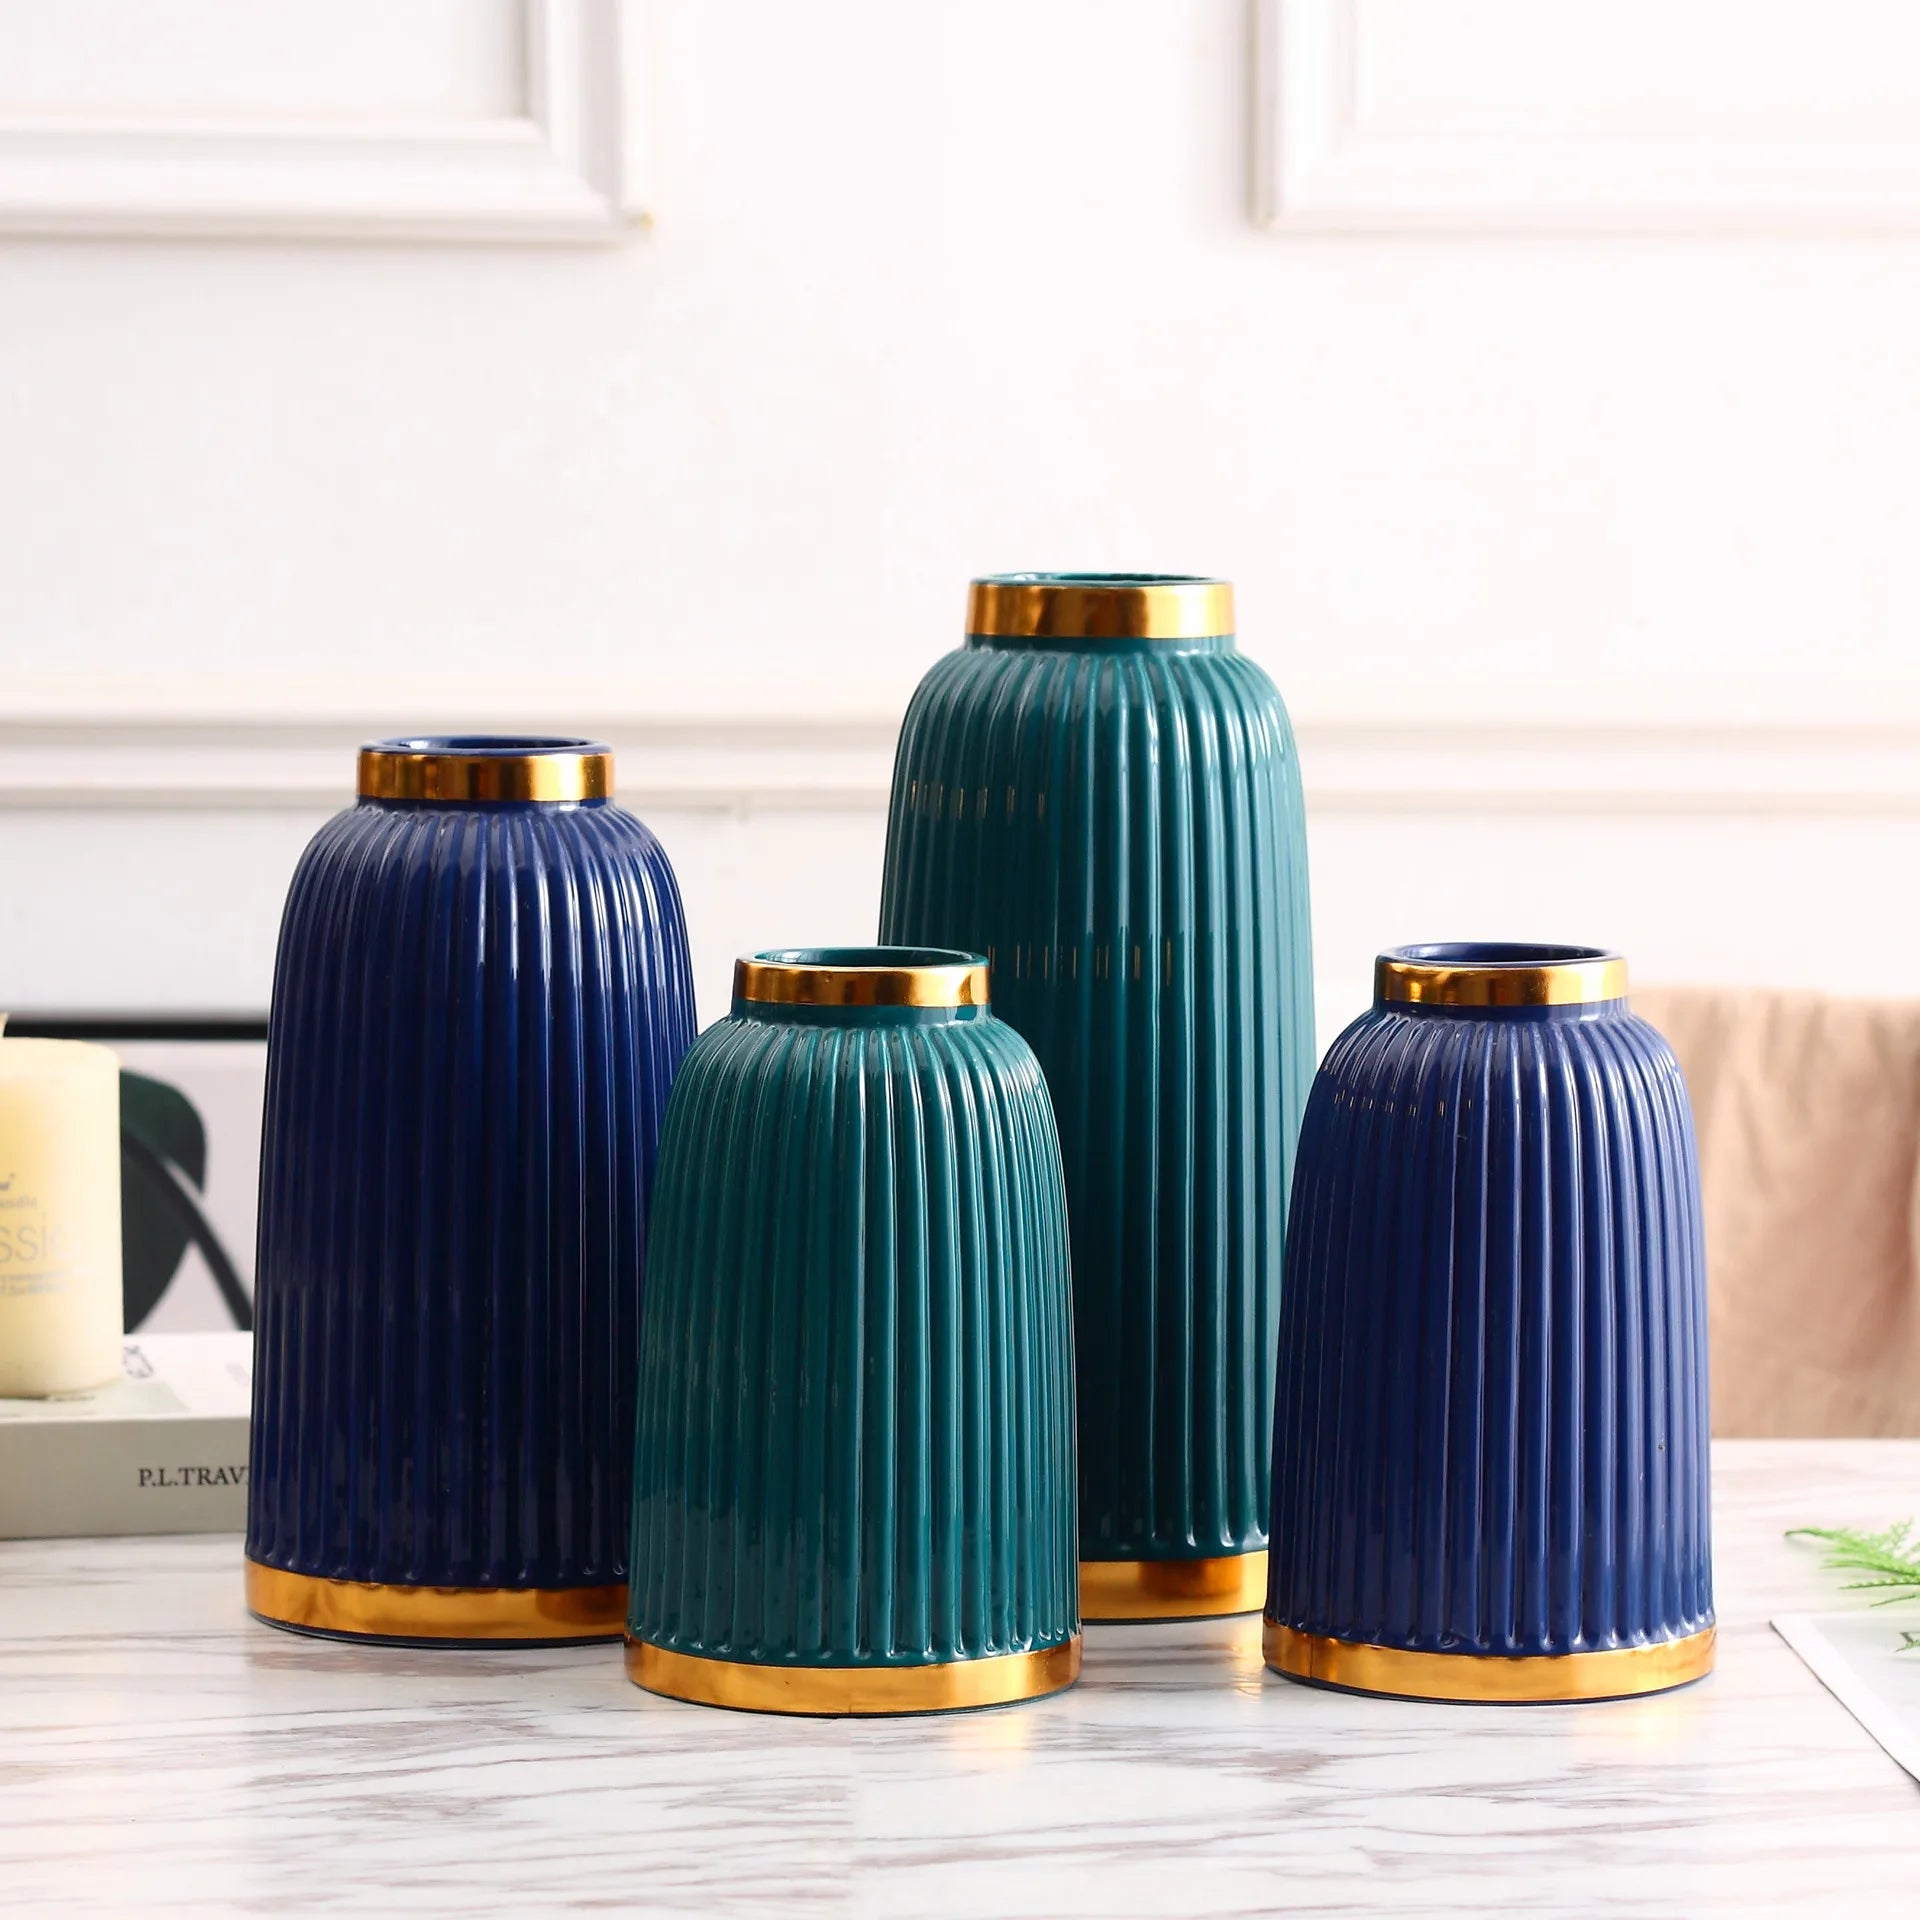 Jarrones de cerámica minimalistas modernos ubicados en accesorios blancos, azul tibetano y verde para la decoración del hogar para la sala de estar